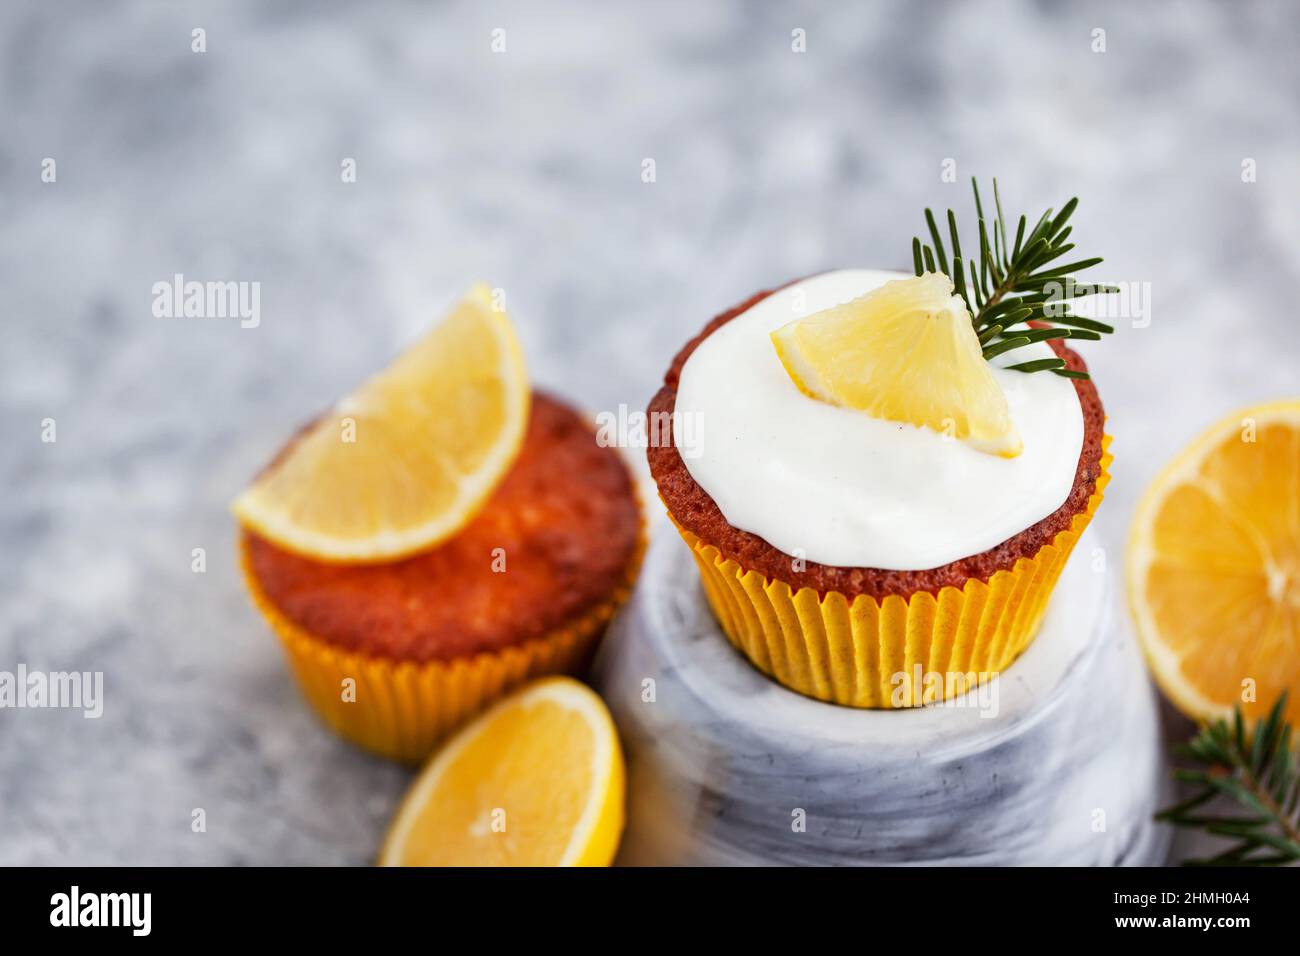 Délicieux petits gâteaux au citron faits maison, décorés avec du fromage à la crème et des agrumes frais Banque D'Images